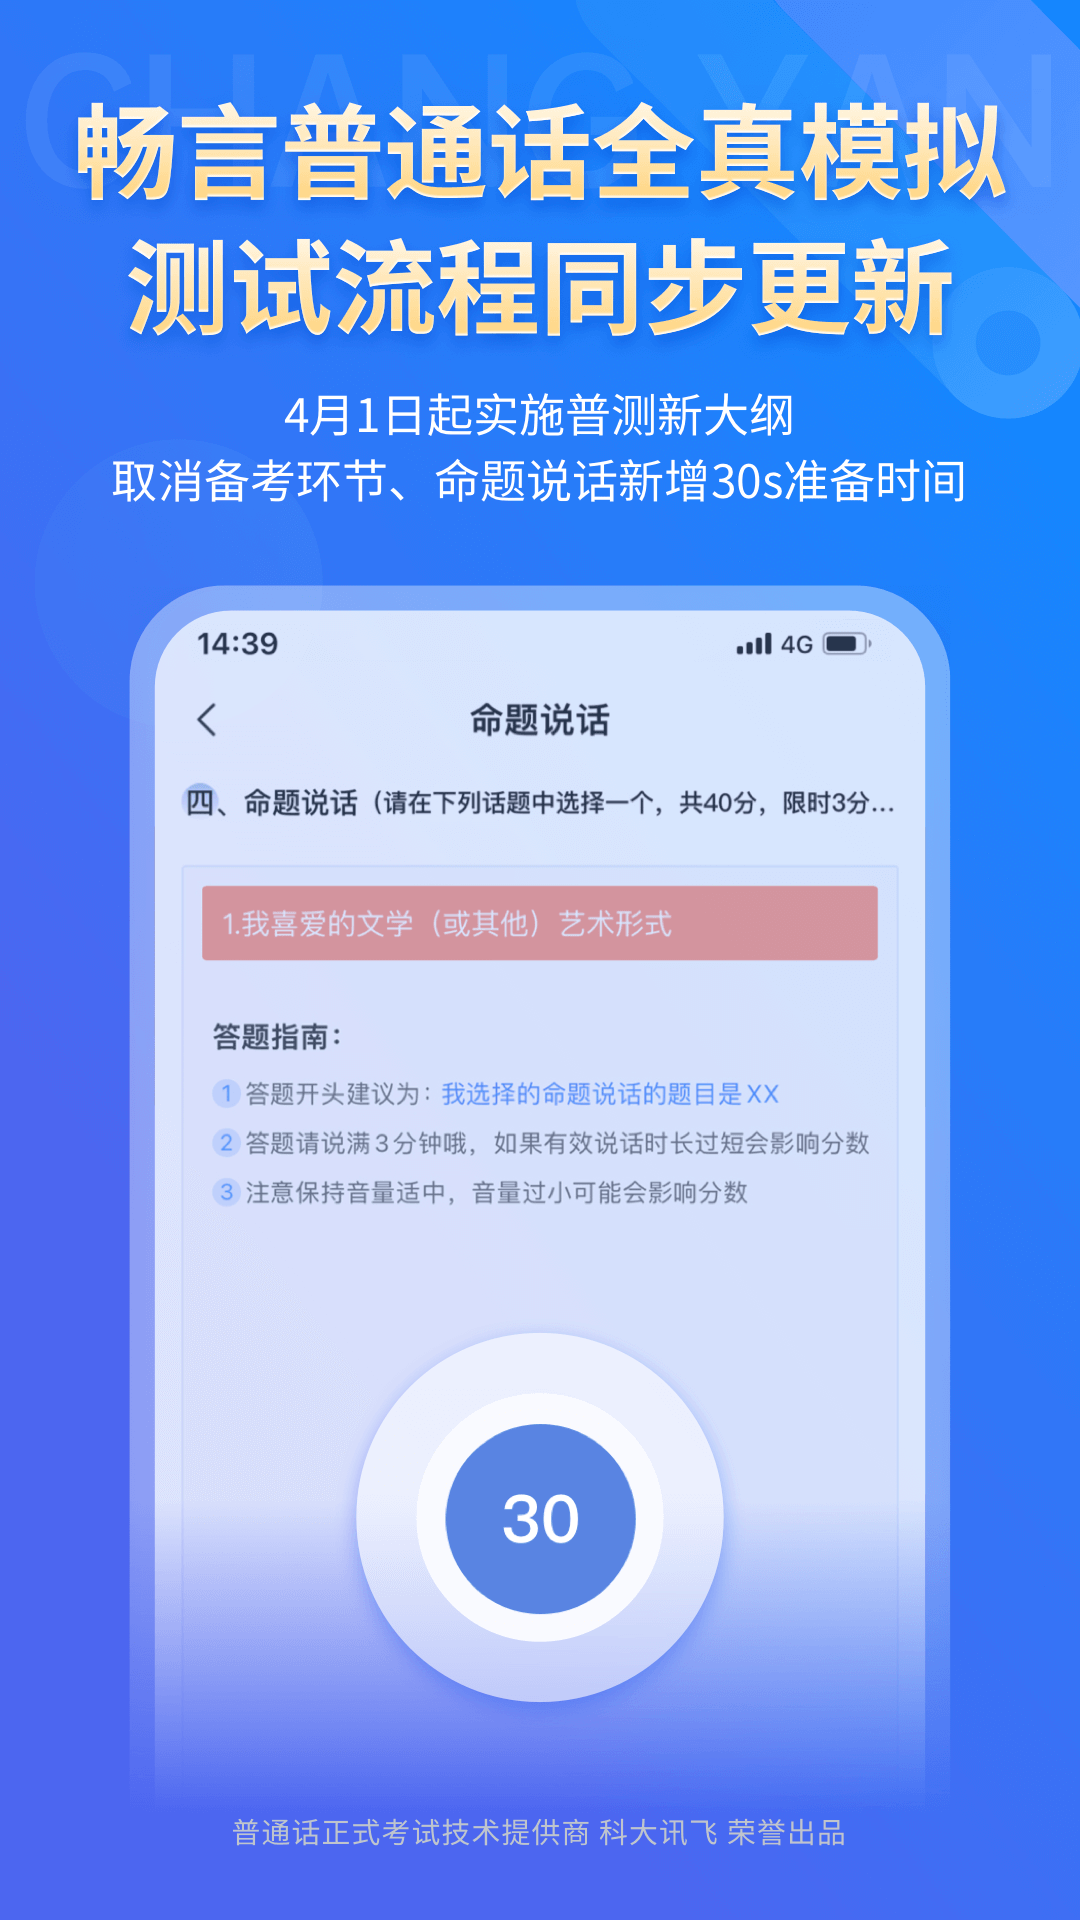 畅言普通话苹果手机版 v5.0.1060 官方版3